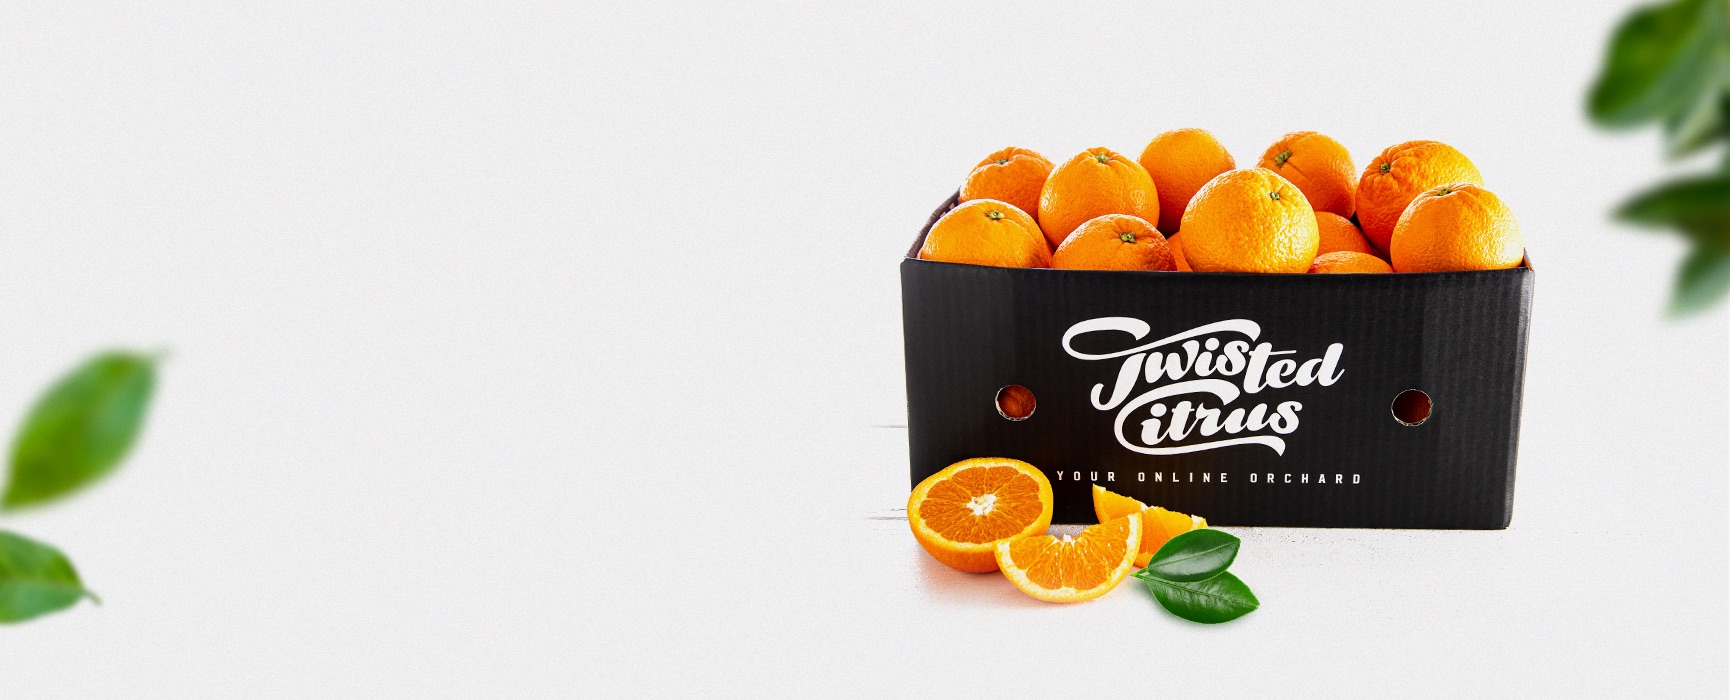 Twisted Citrus Twisted Citrus - Oranges Season - 1 - BG.jpg